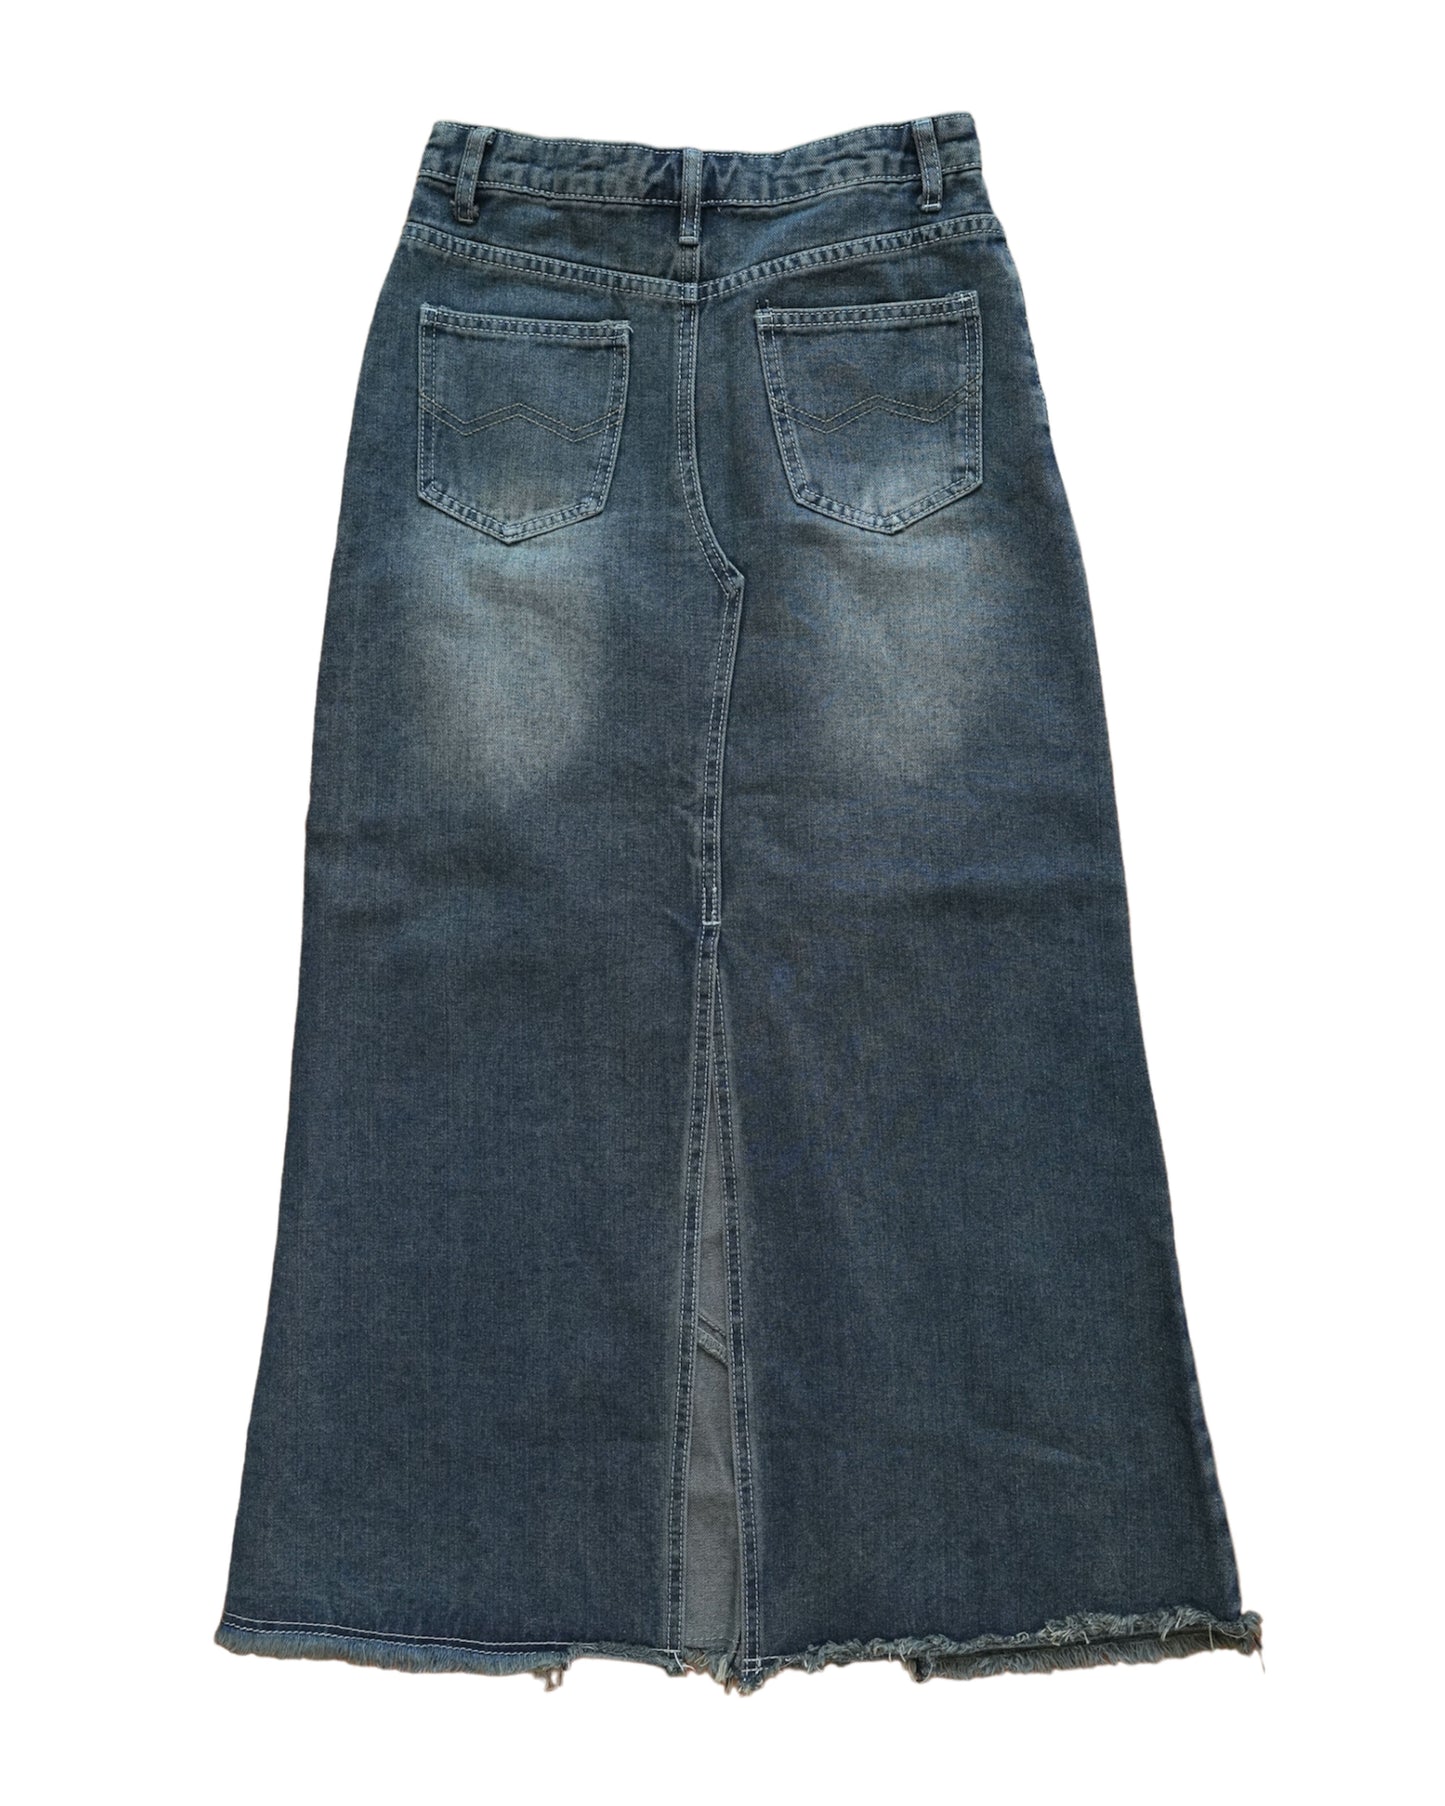 Vintage Washed Maxi Denim Skirt